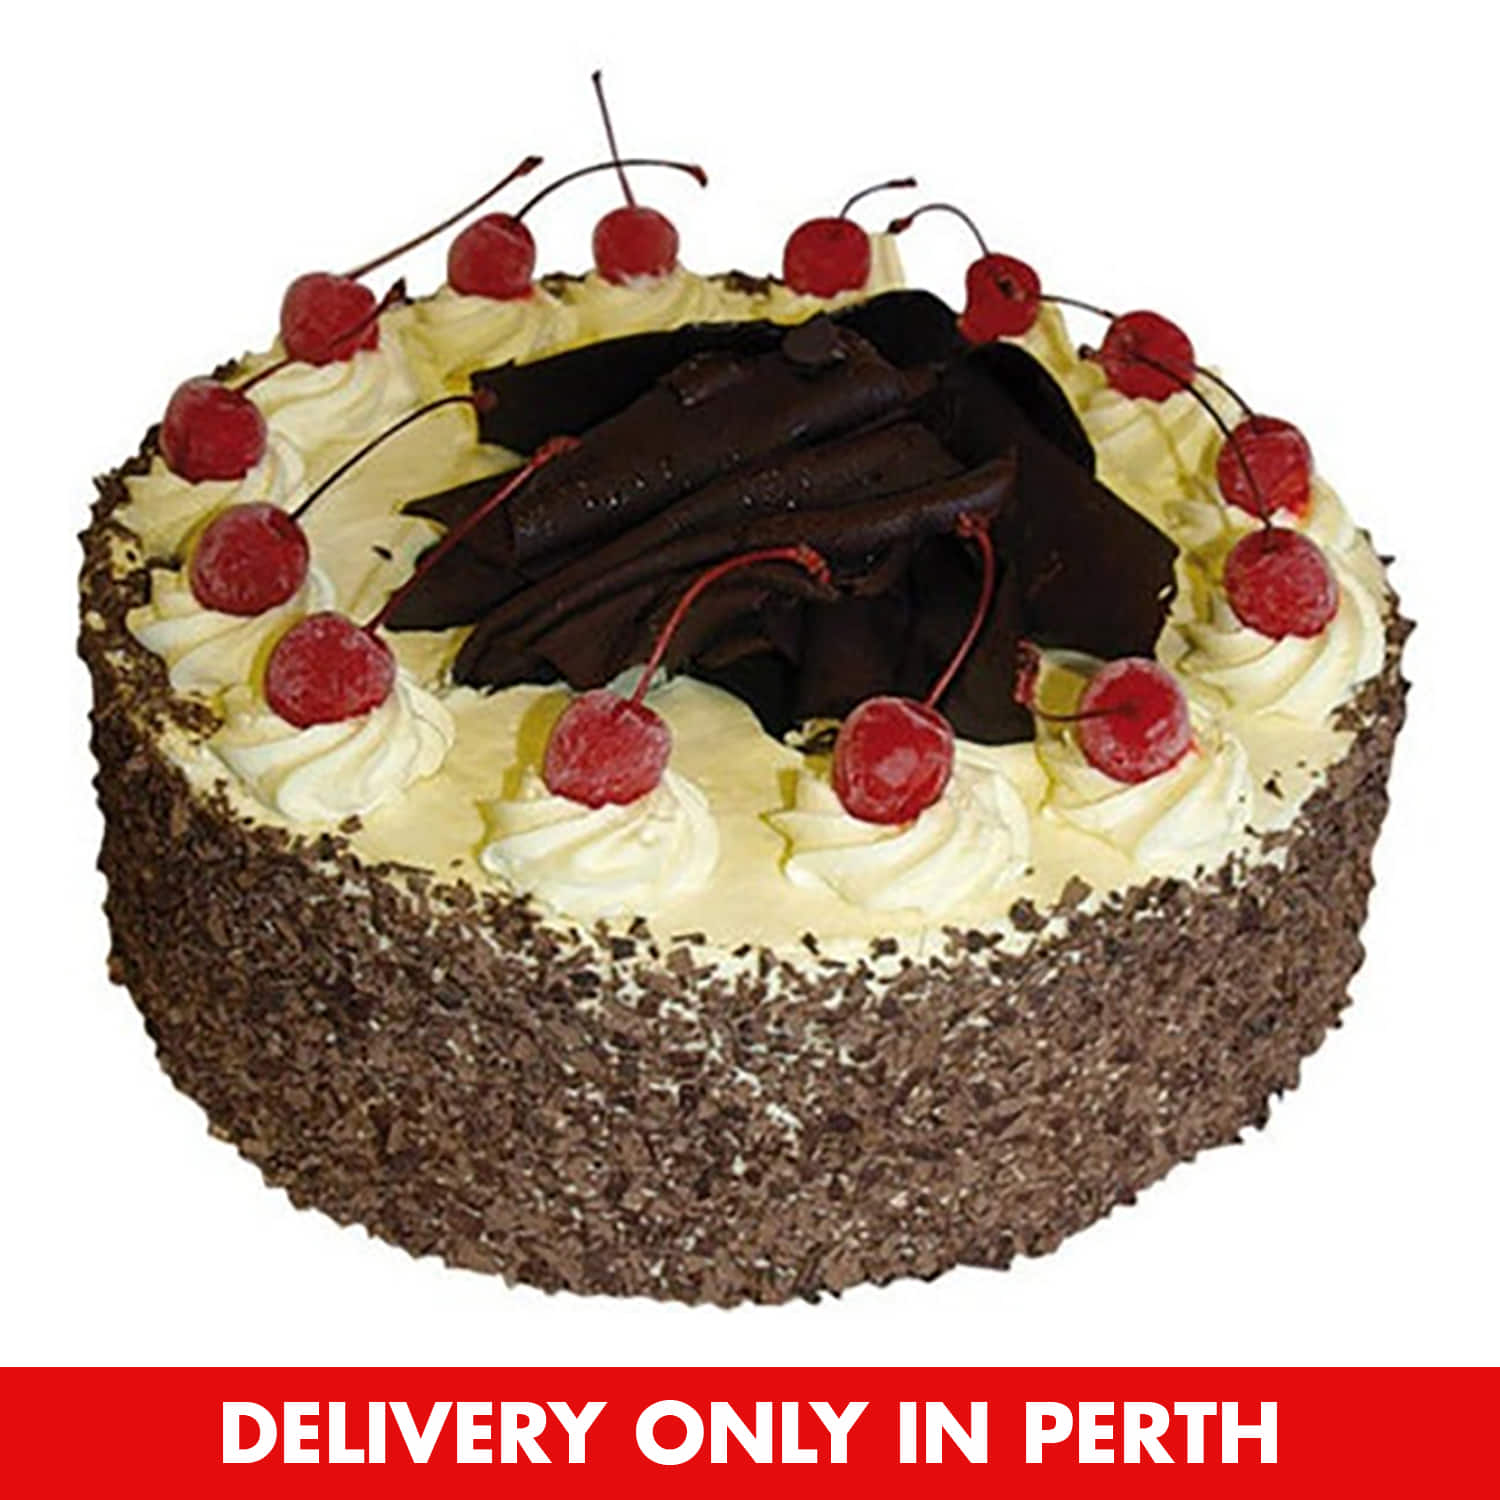 Emigrating to Australia! - Decorated Cake by jaimiec - CakesDecor